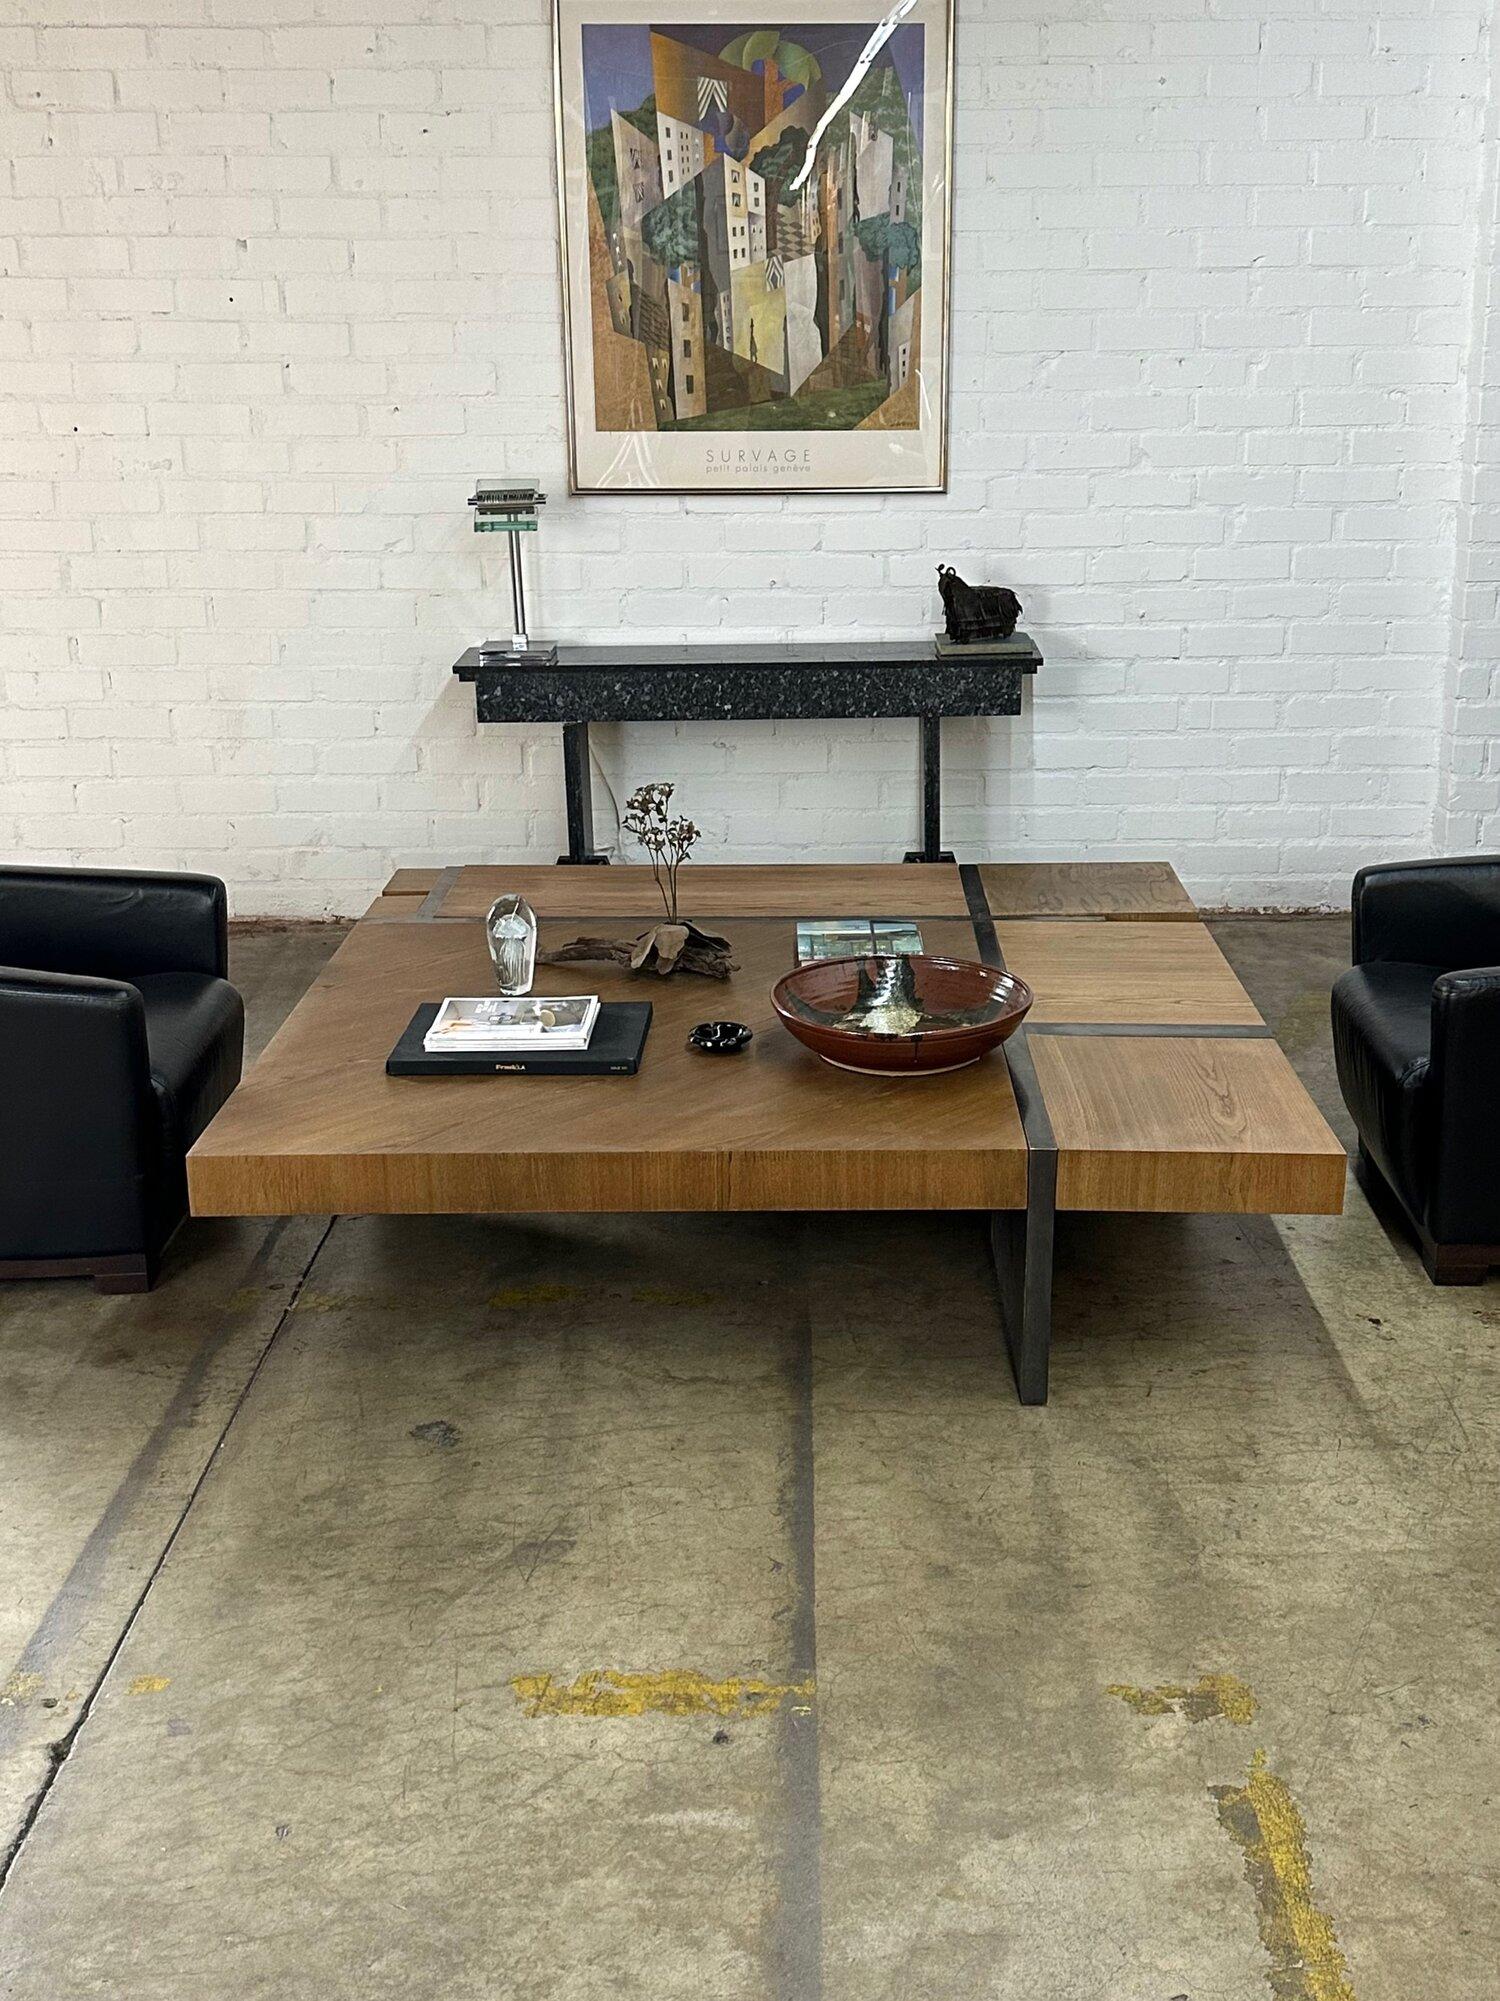 W70.25 D70 H17.5

Variante peu utilisée du meuble Duplex de la société Hudson Furniture à New York. L'objet a un cadre en métal solide qui semble être en bronze patiné. L'article a été remis à neuf et présente de légères imperfections au niveau du